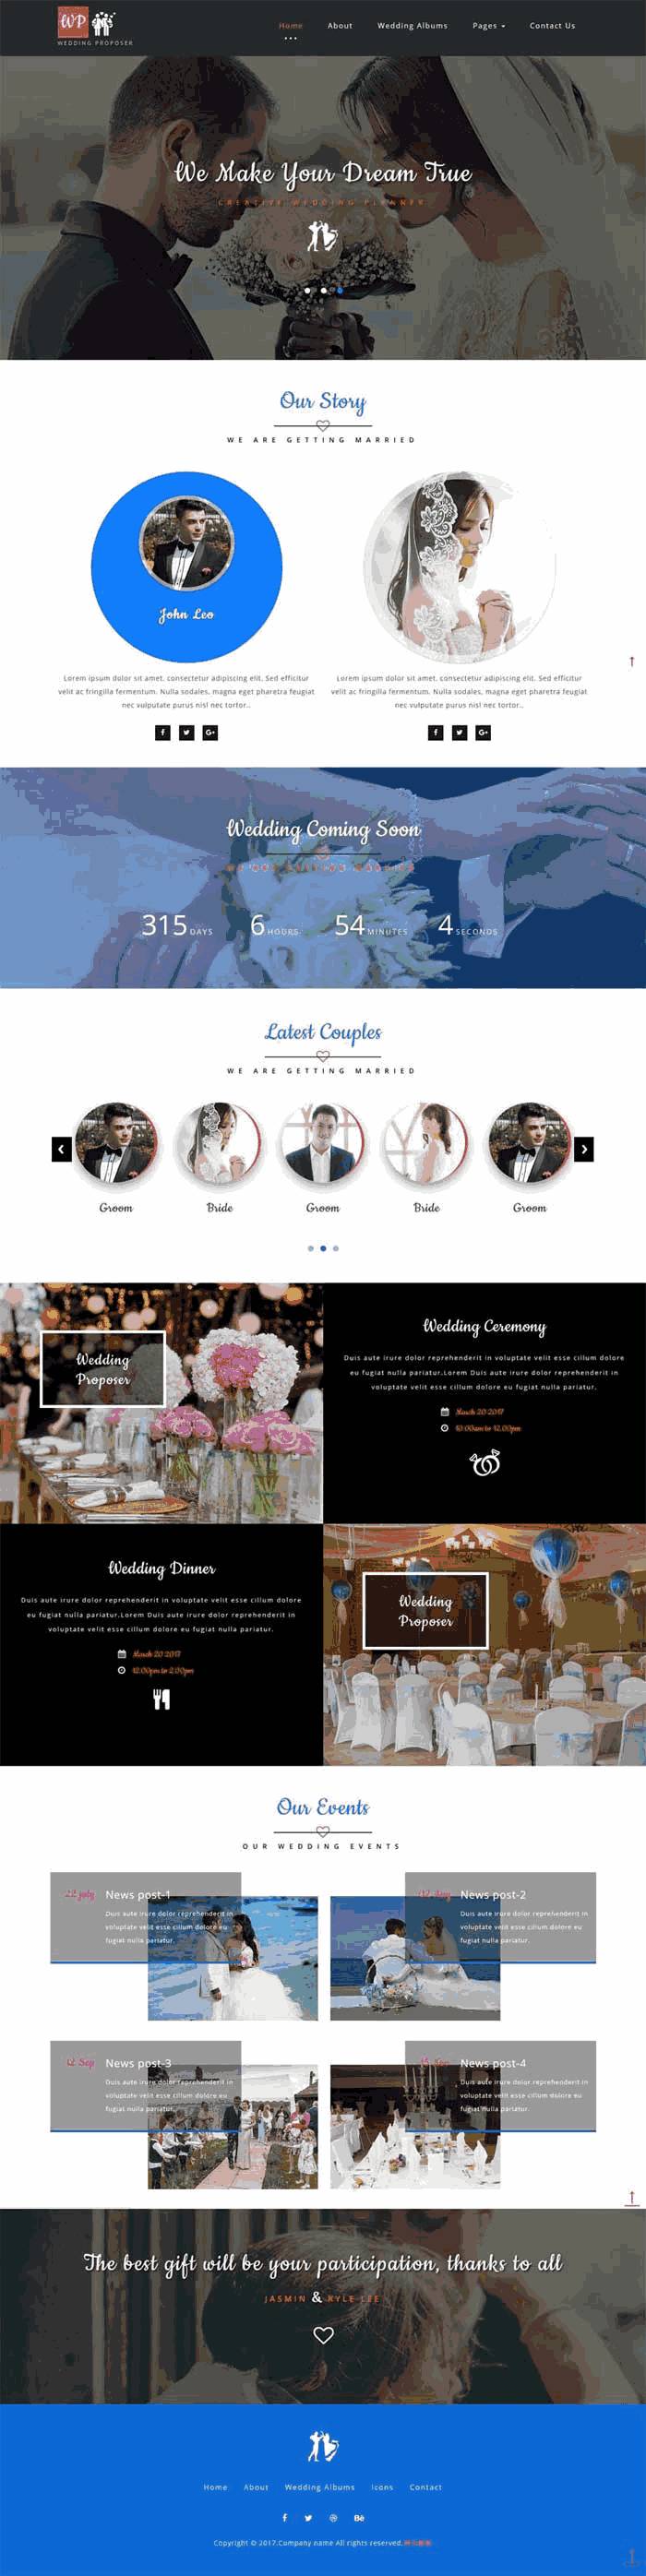 简单大气的婚纱摄影婚庆公司网站制作_网站建设模板演示图